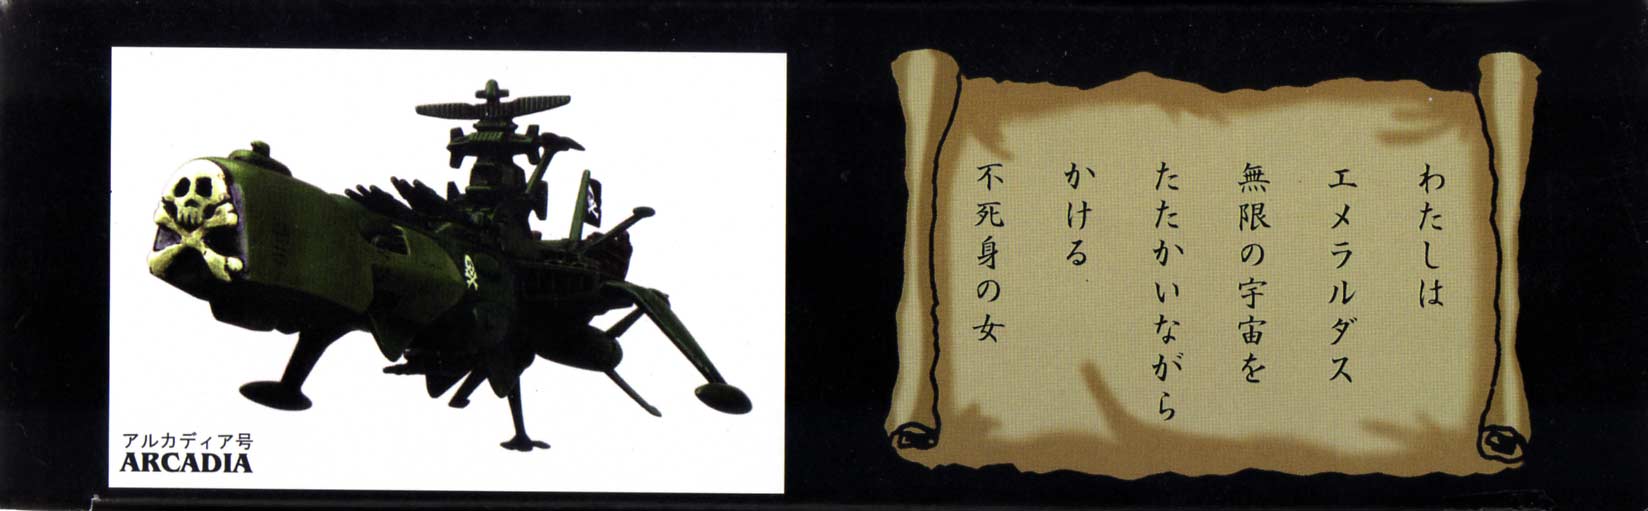 Packaging (droite) de l'Arcadia de Mabell de la collection Leiji's Space ship